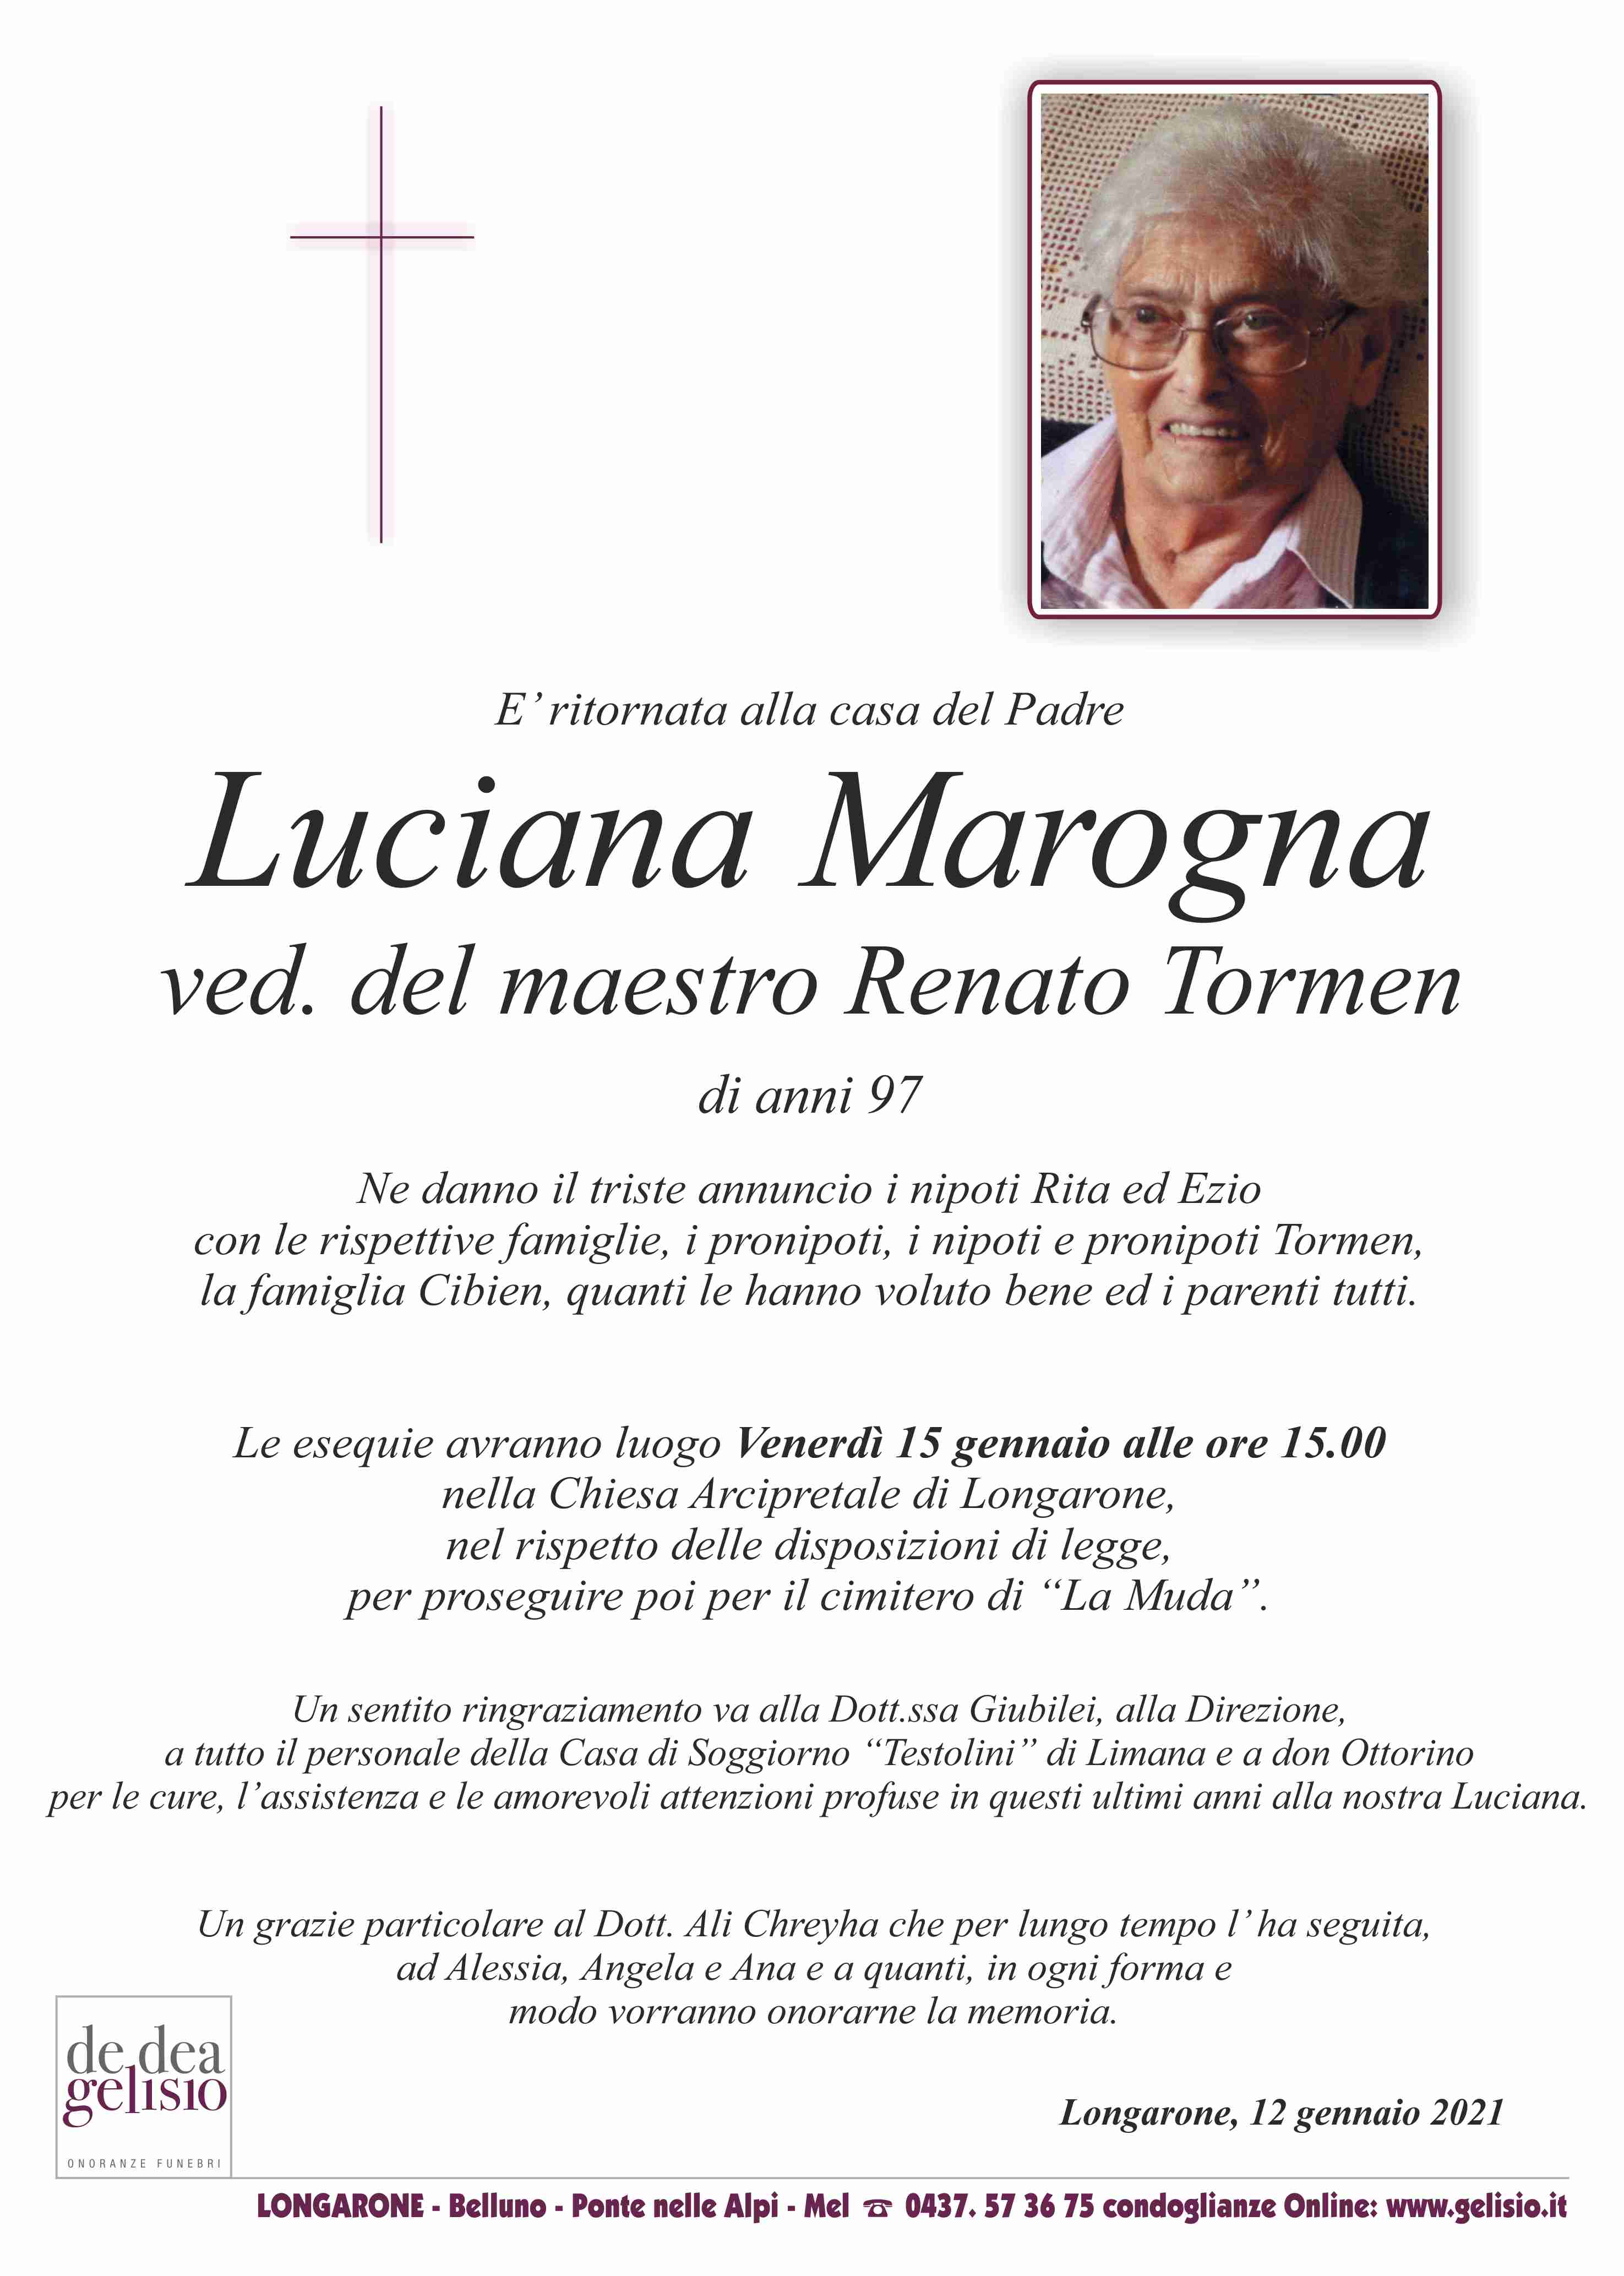 Marogna Luciana